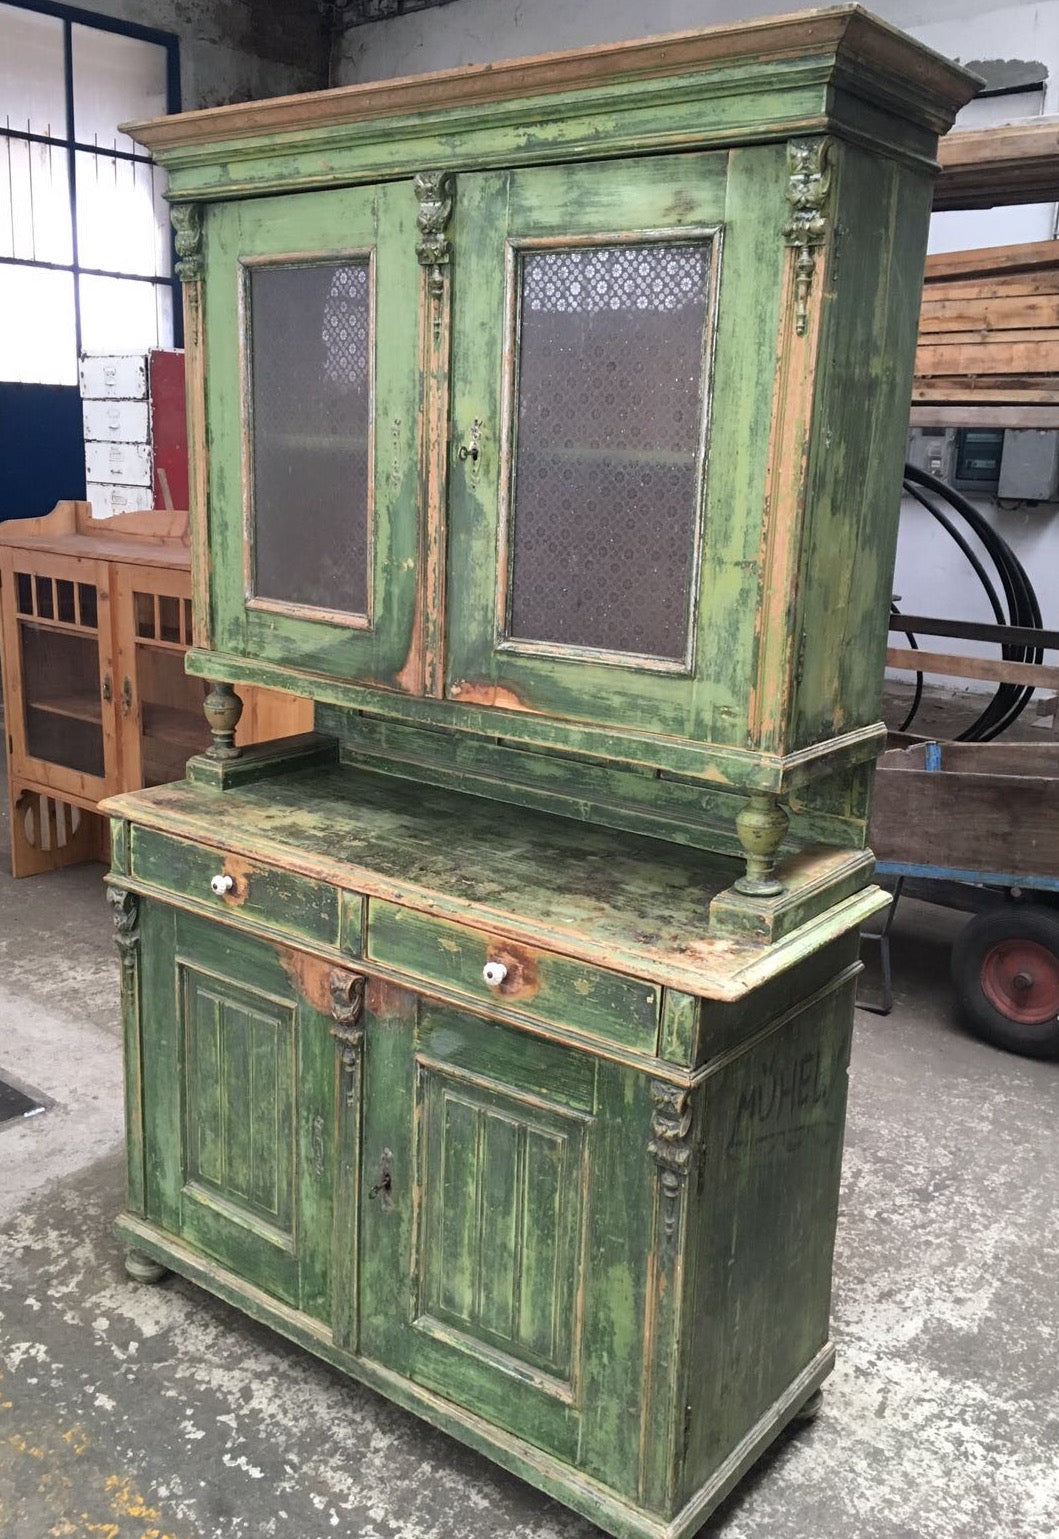 Vintage industrial European wooden kitchen cabinet #2045 green